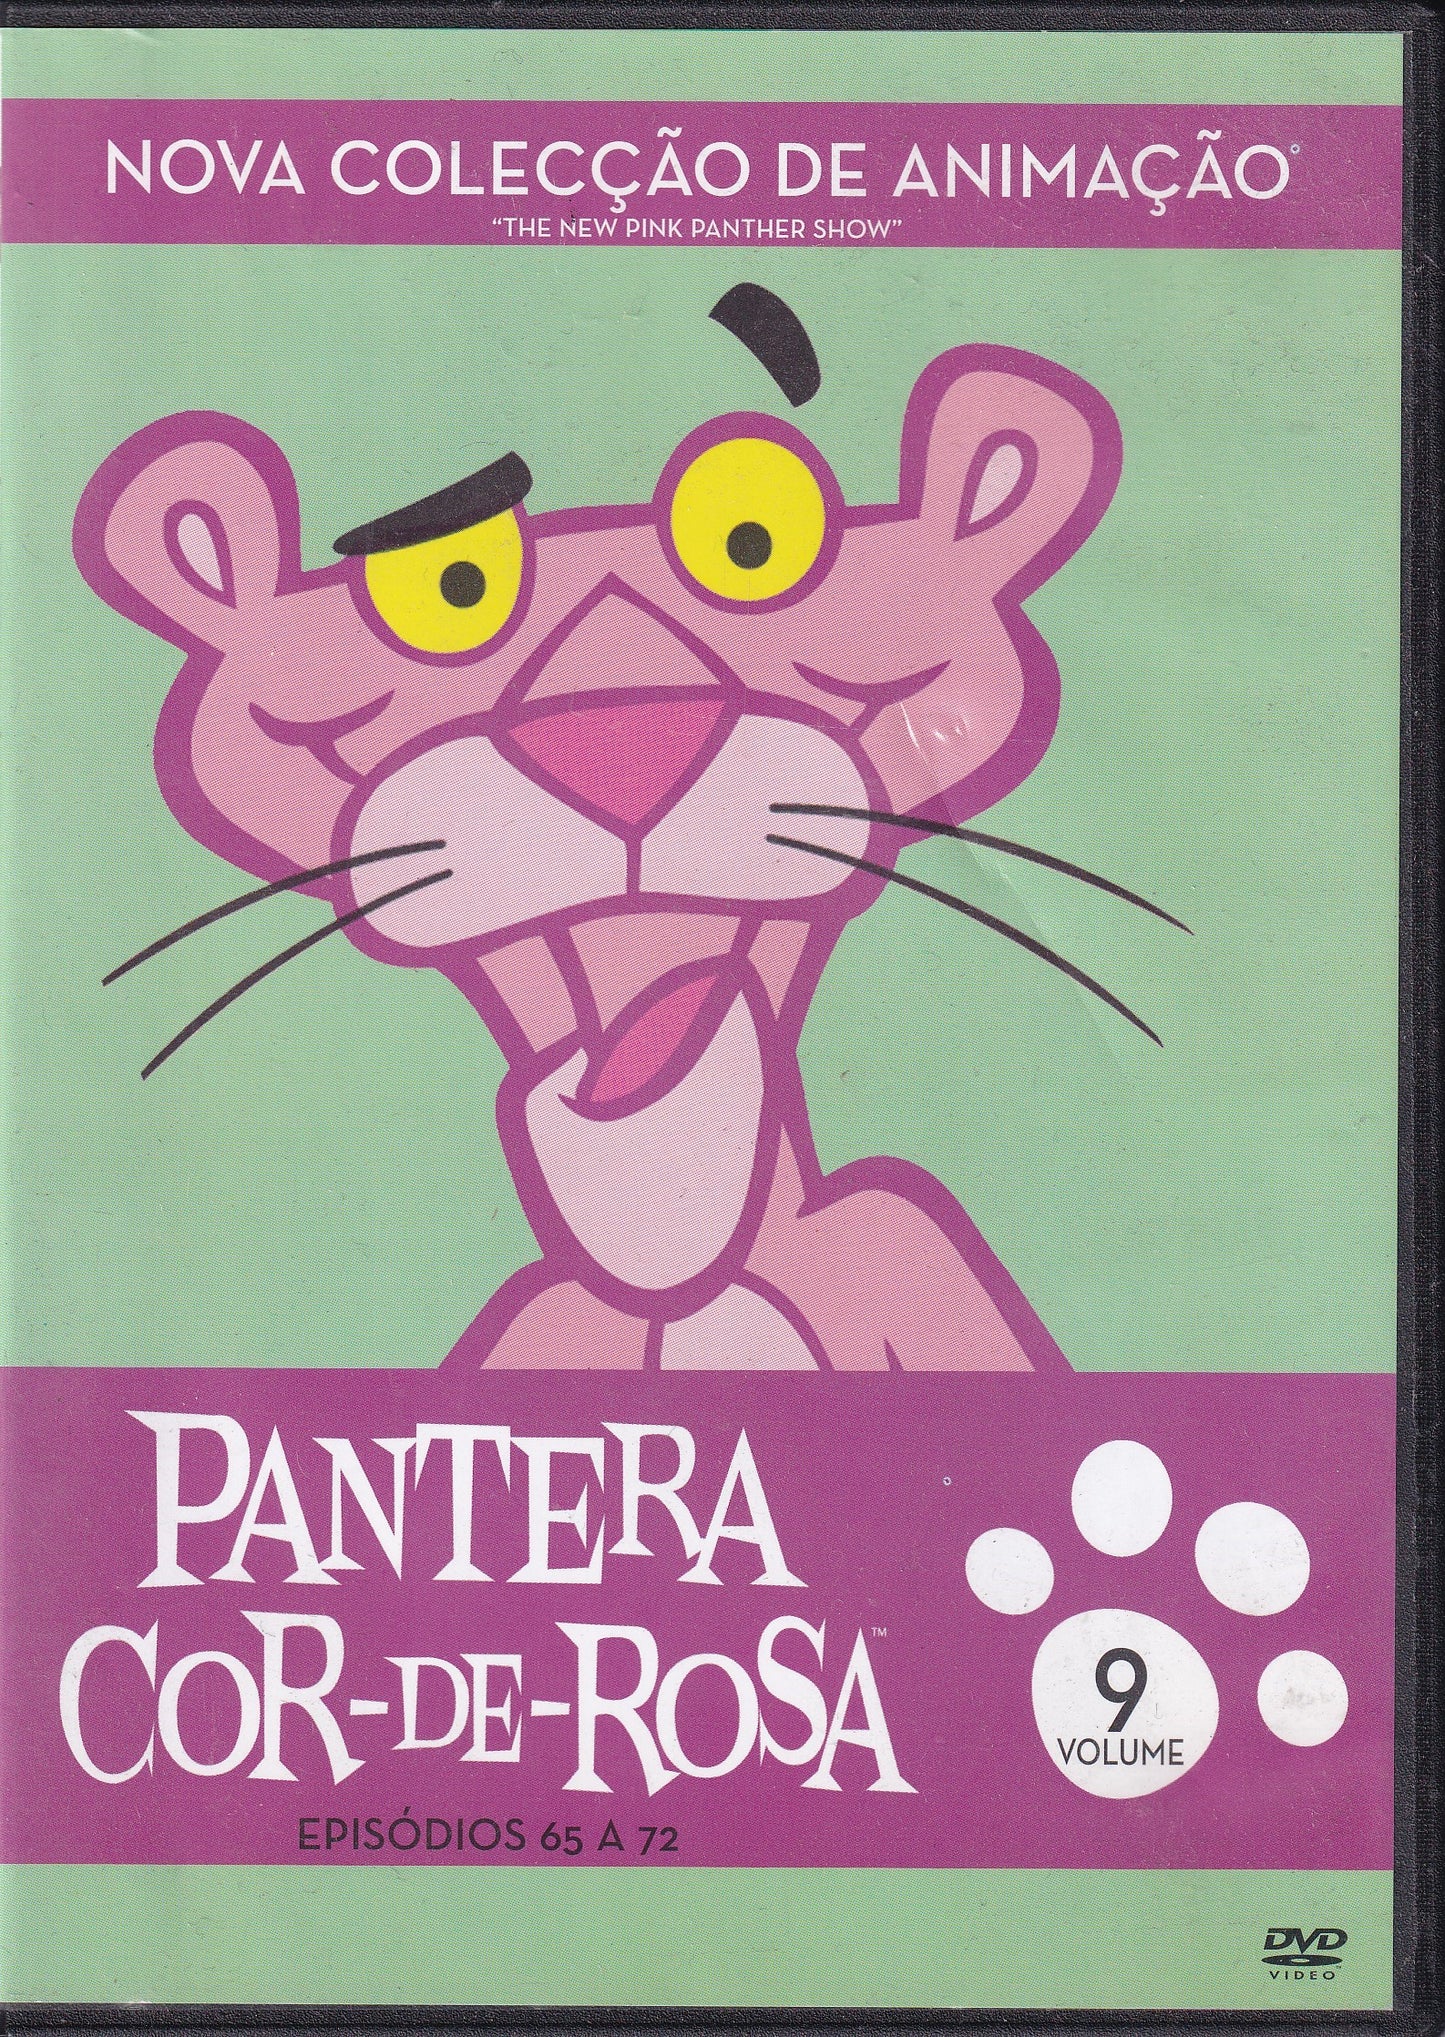 DVD PANTERA COR-DE-ROSA VL 9 ( EPISÓDIOS DO 65 A 72 ) - USADO